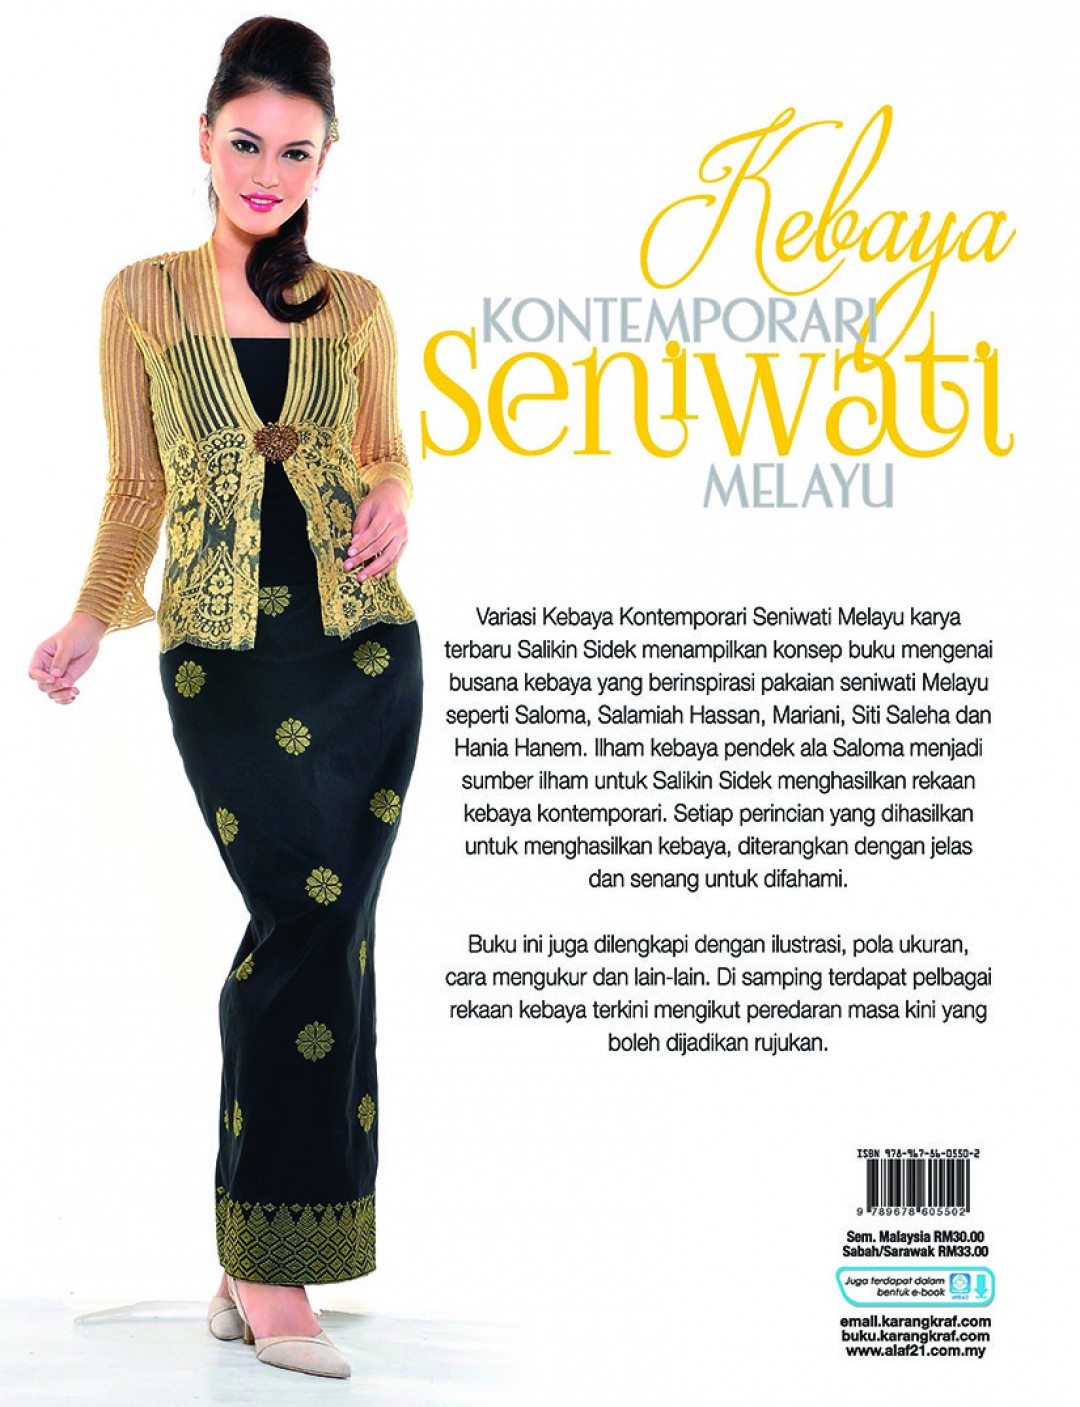 Variasi Kebaya Kontemporari Seniwati Melayu